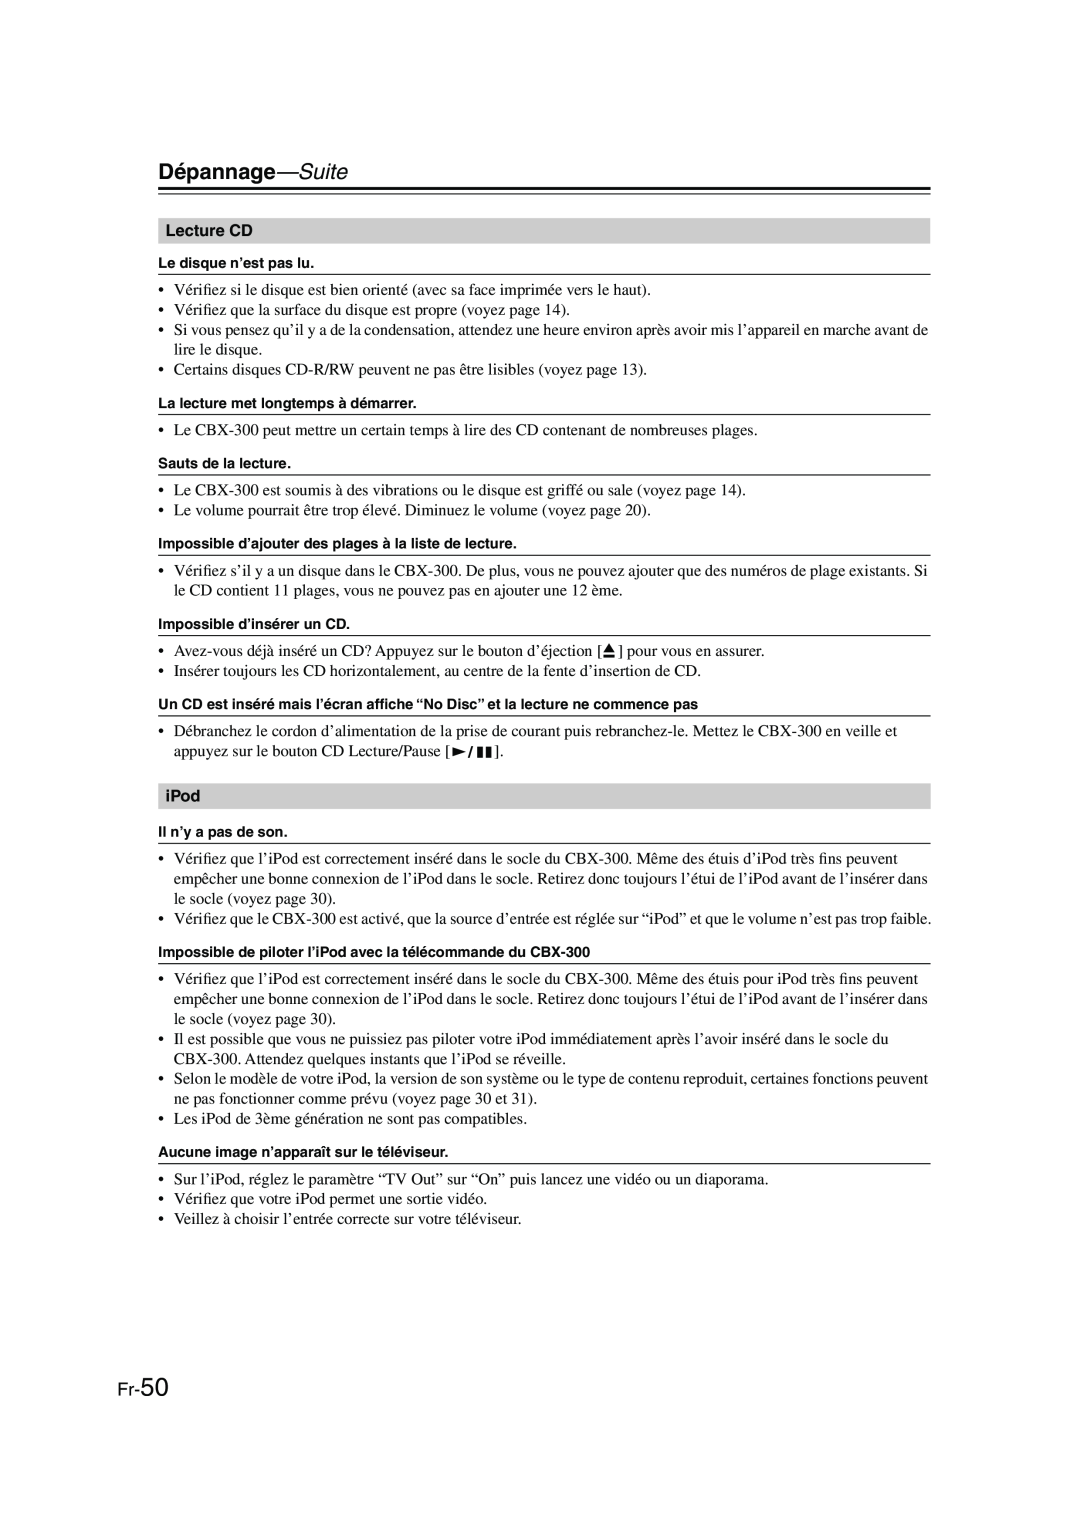 Onkyo CBX-300 instruction manual Dépannage—Suite, Fr-50 